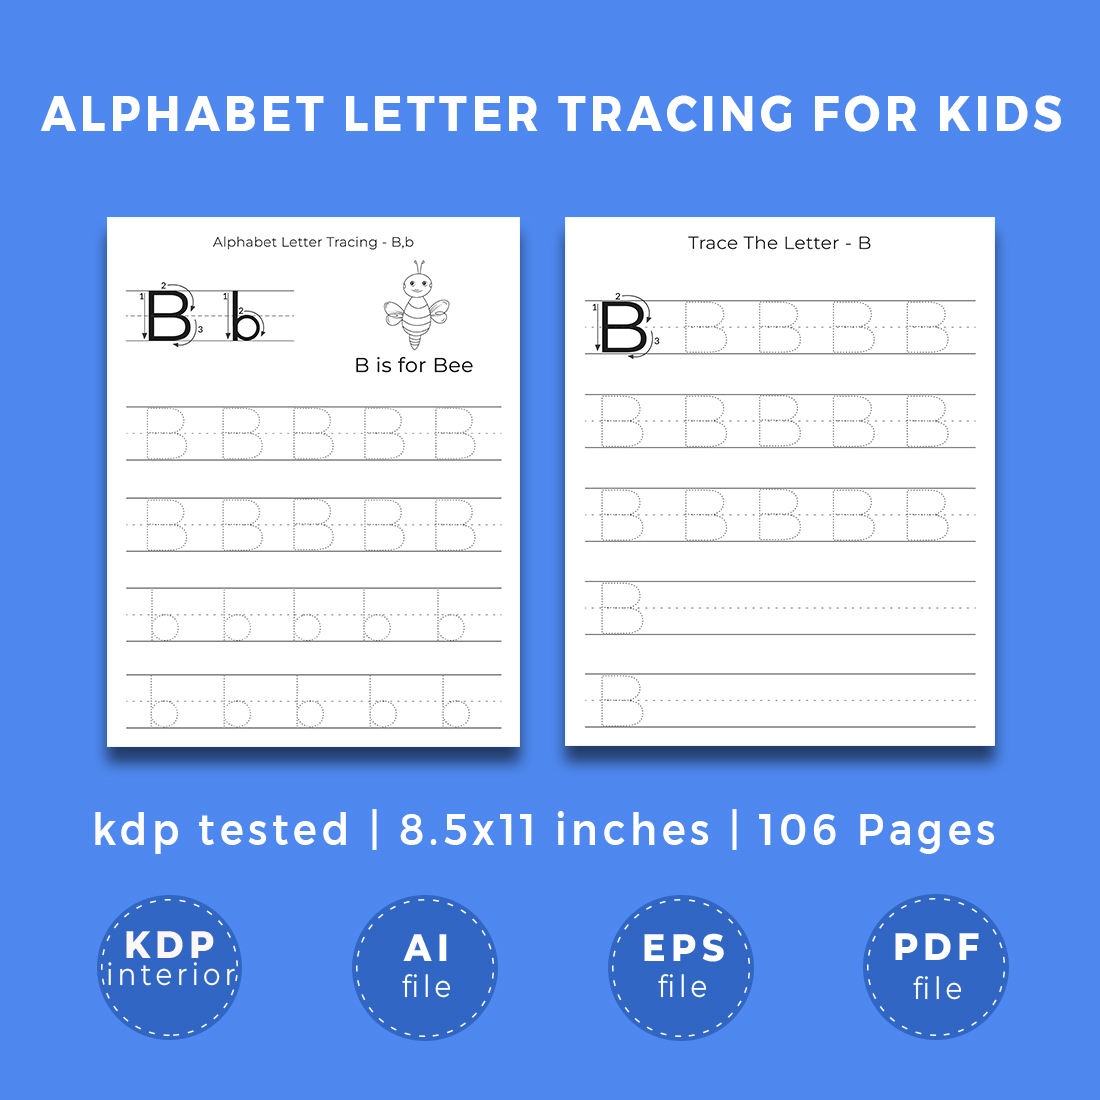 KDP Interior Alphabet Letter Tracing Worksheet For Kids cover image.